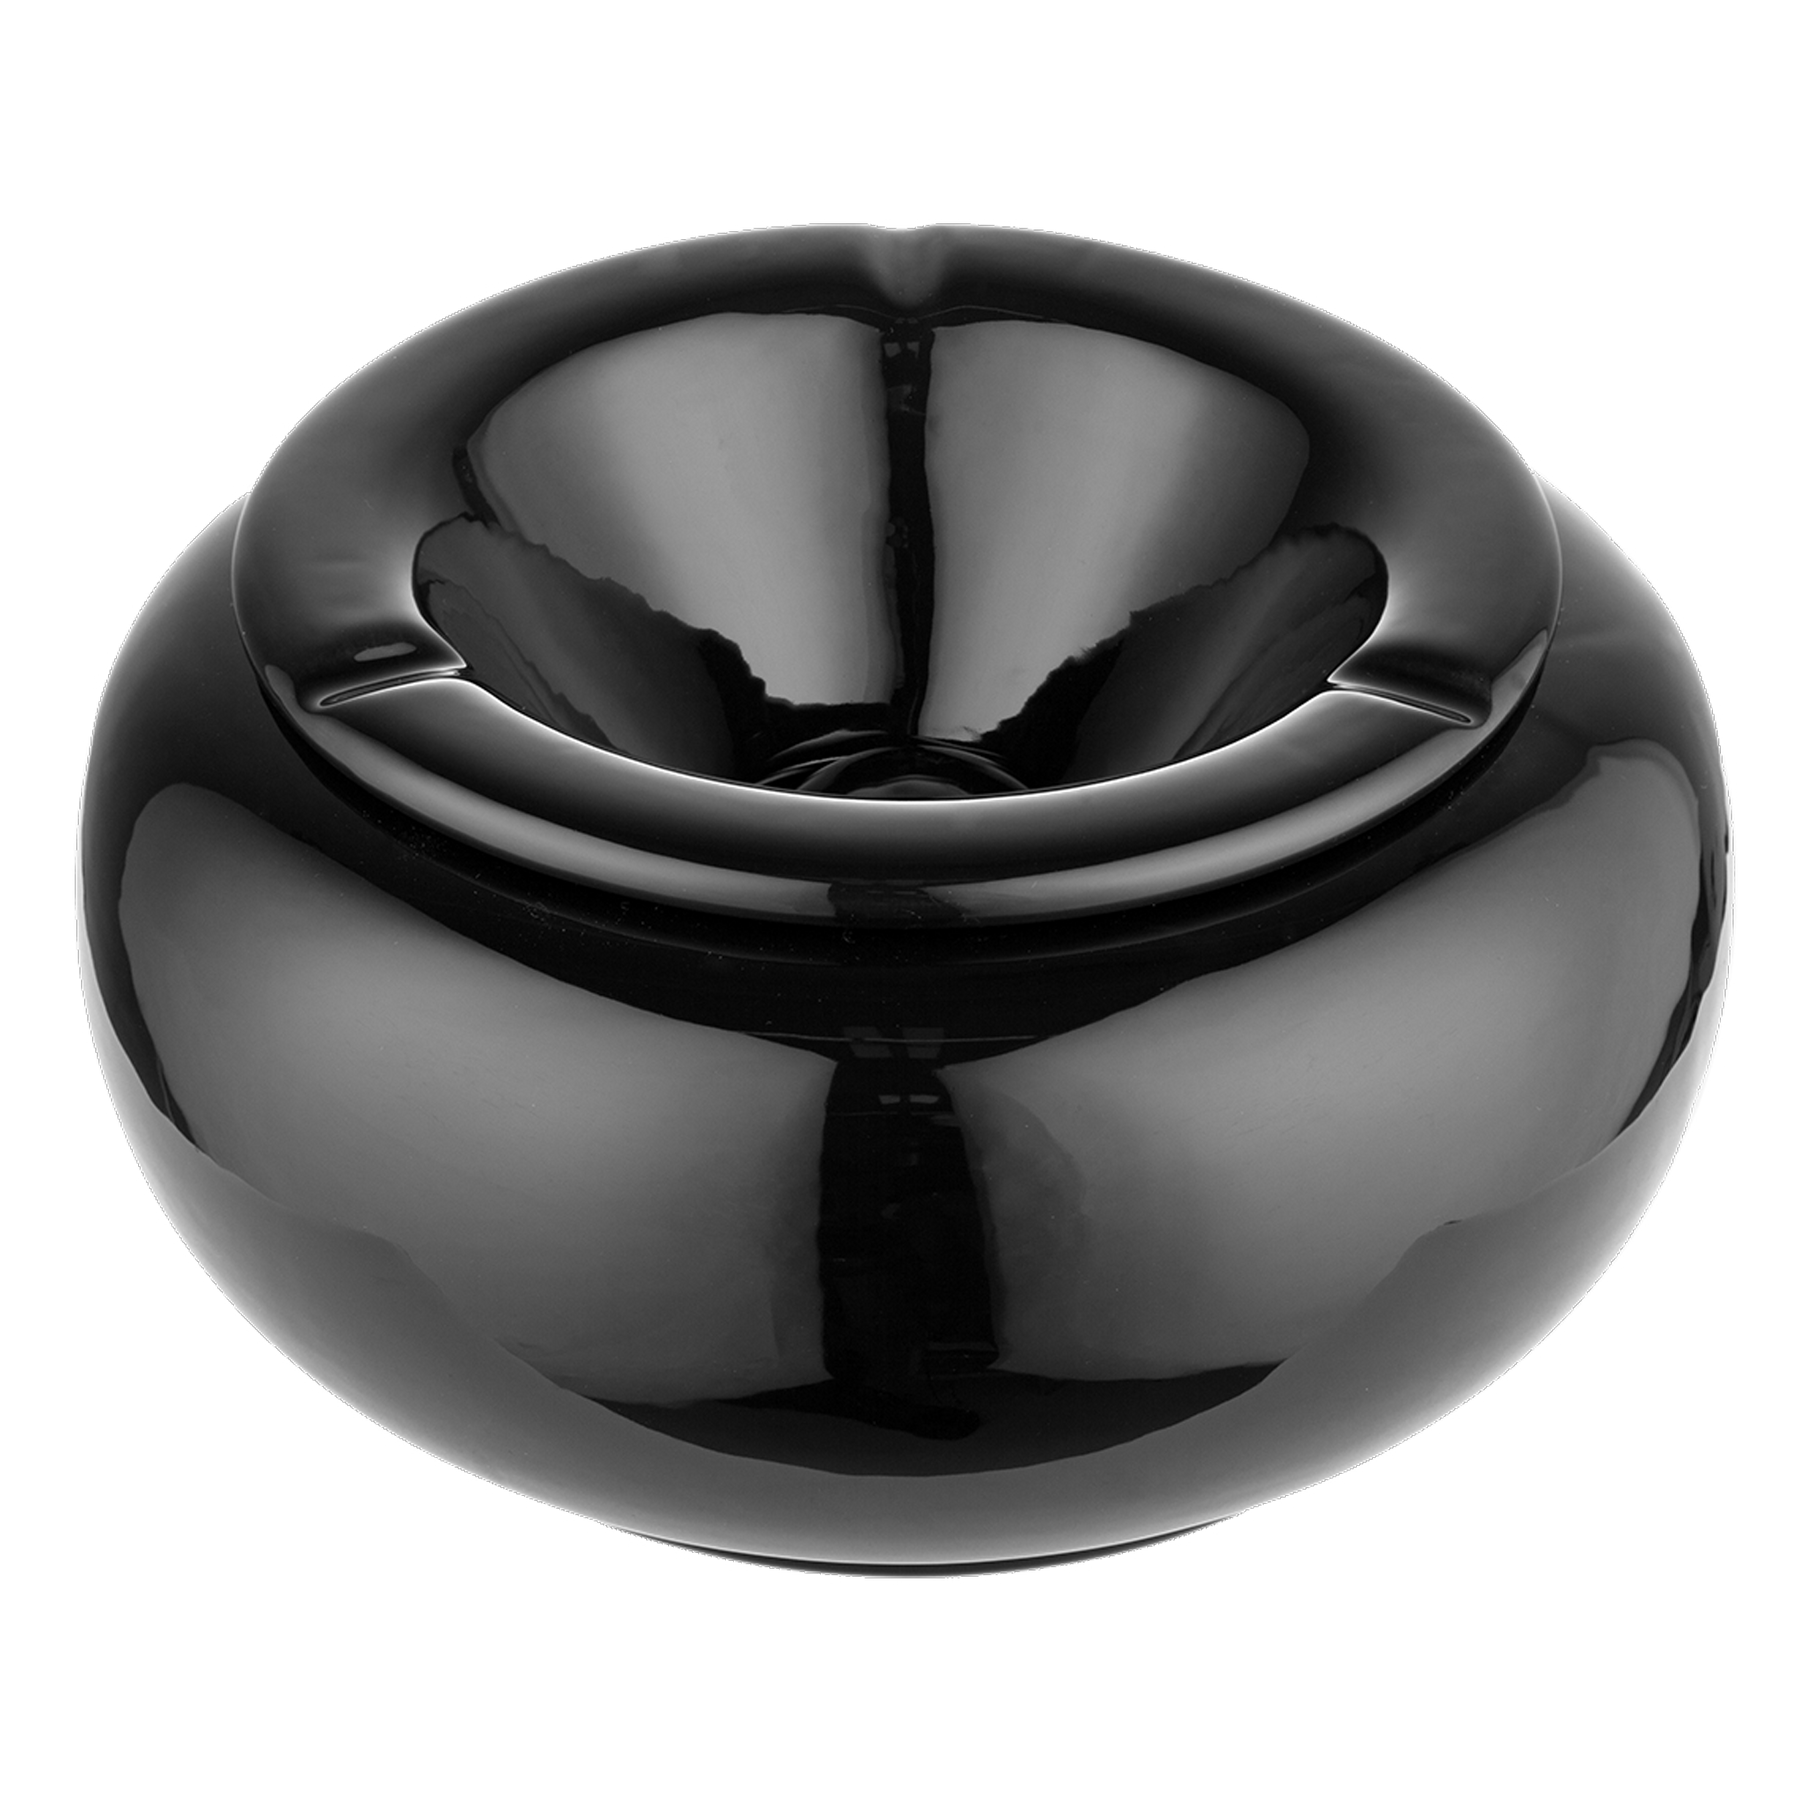 Wind Aschenbecher ø 15 cm, H 6 cm – Potteria – Keramik bemalen Neuss